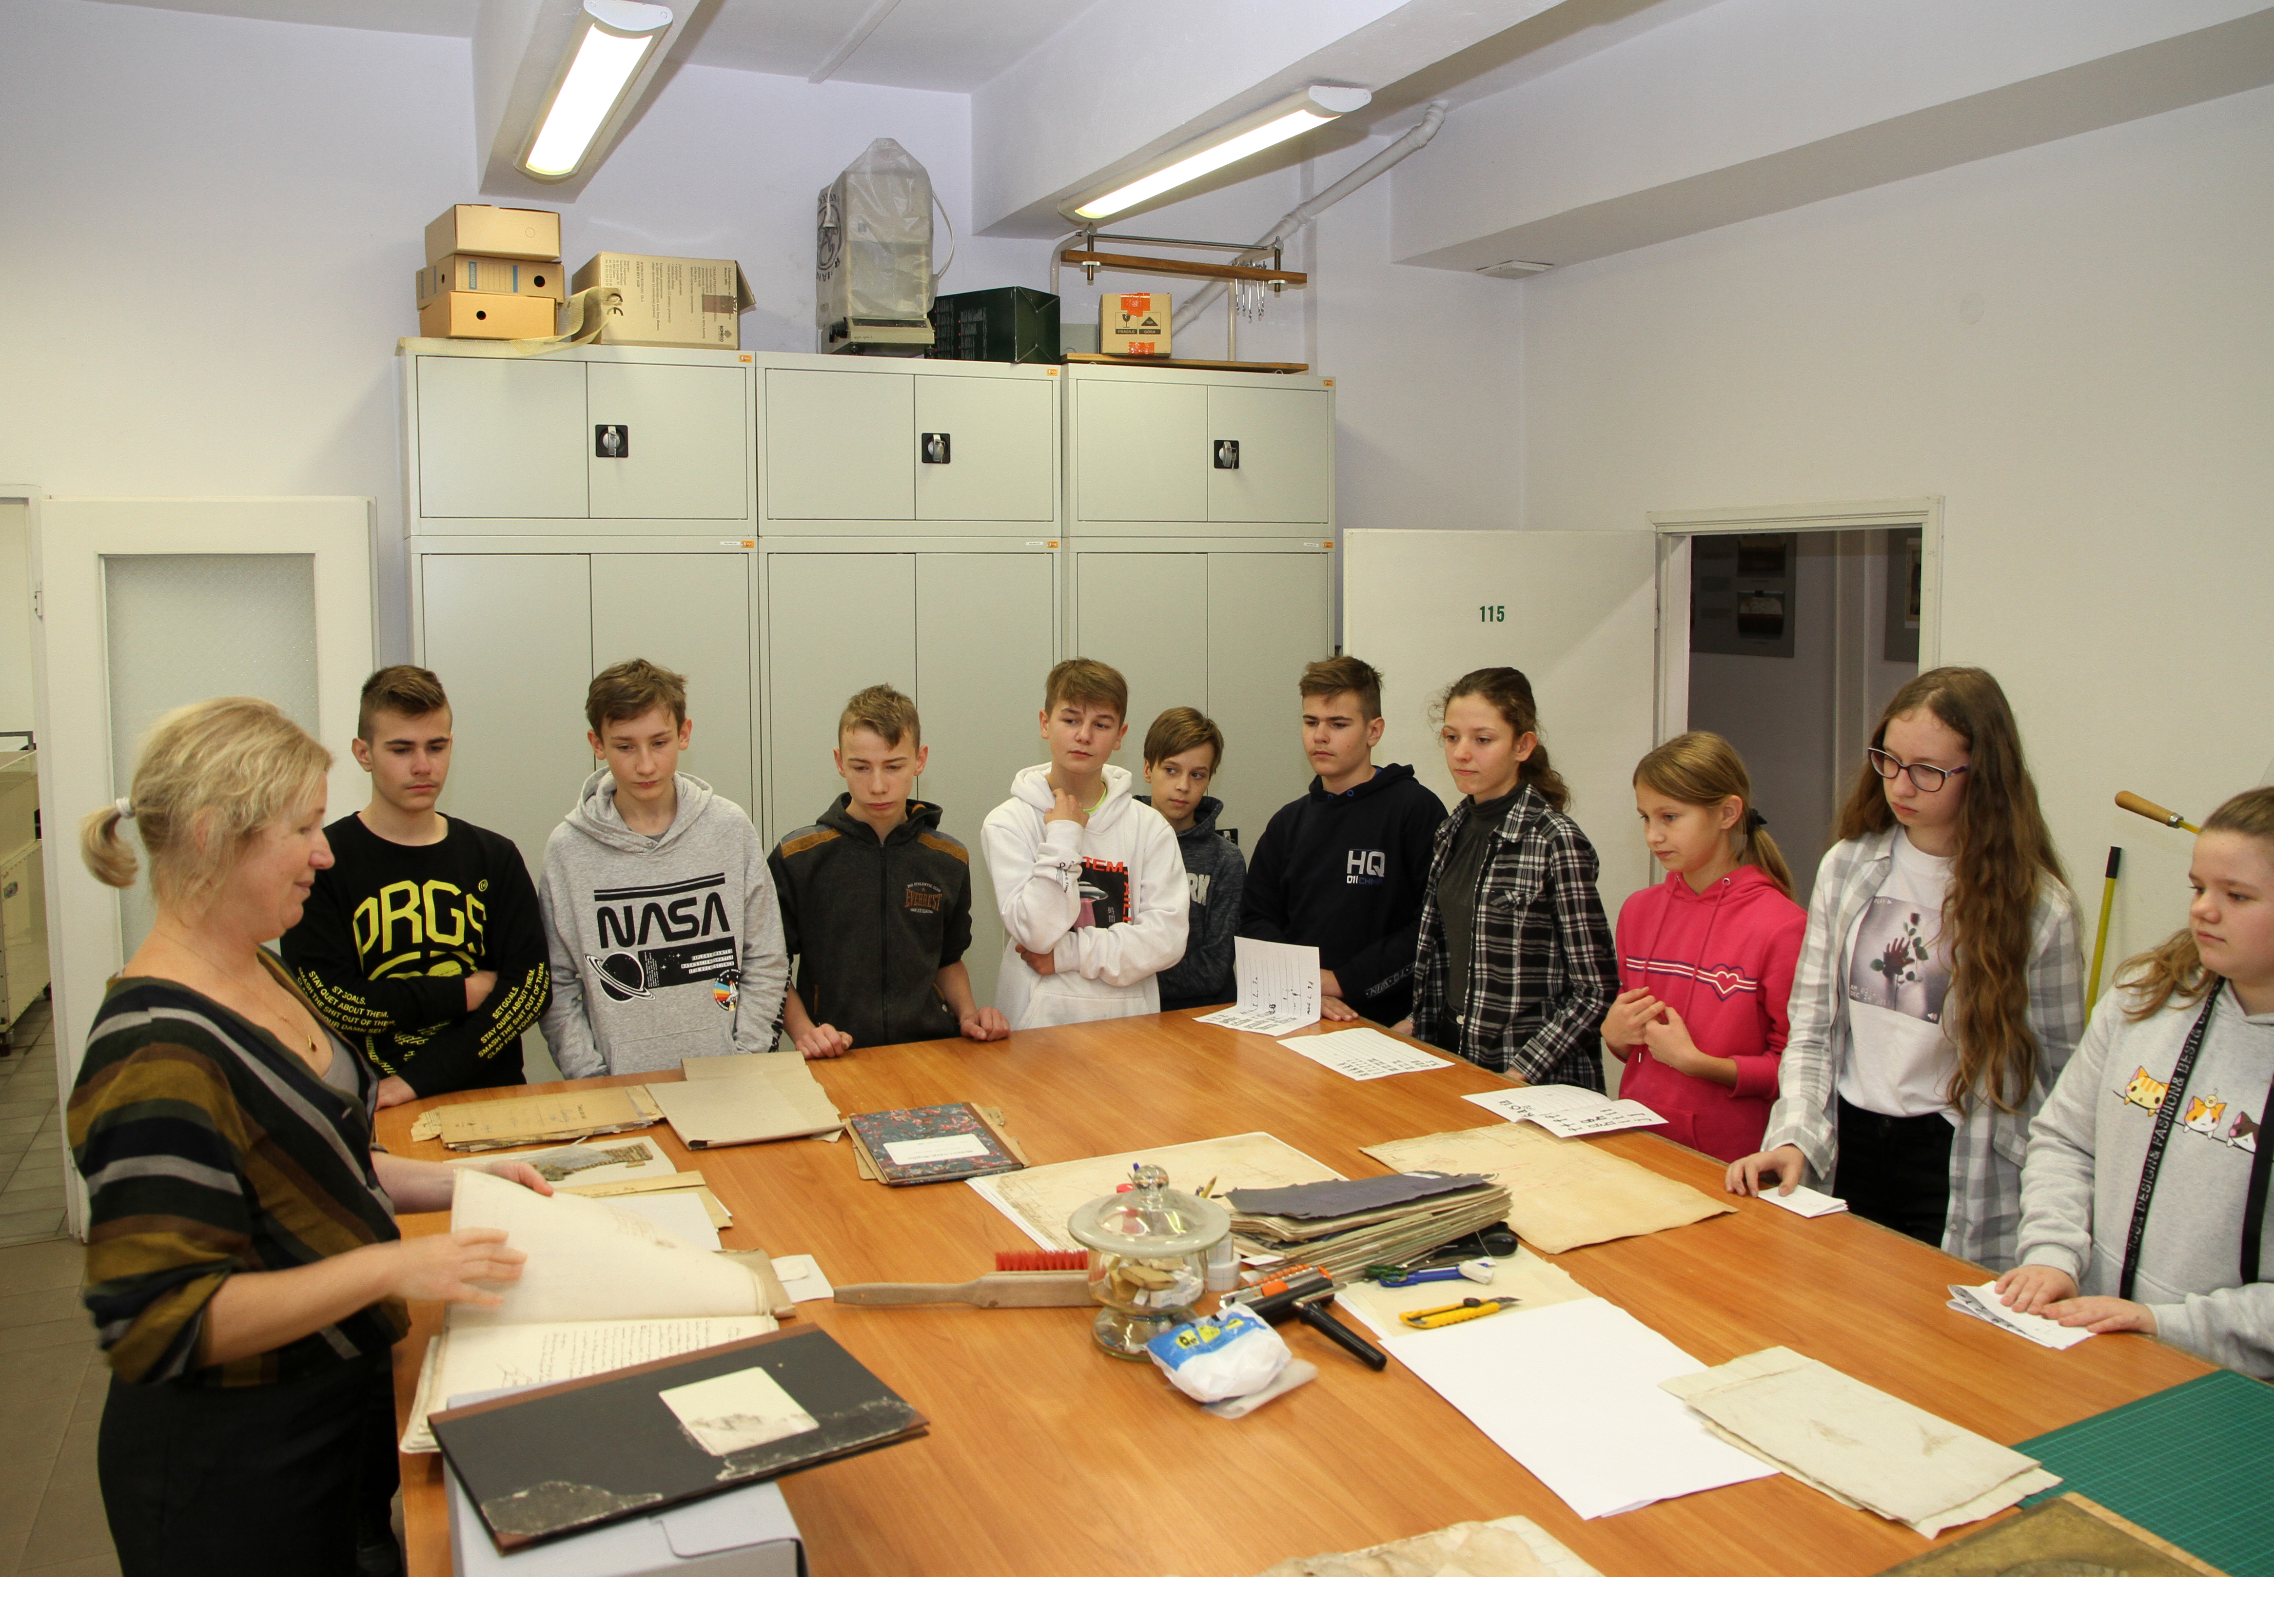 Archiwistka prezentuje grupie uczniów dokumenty archiwalne.